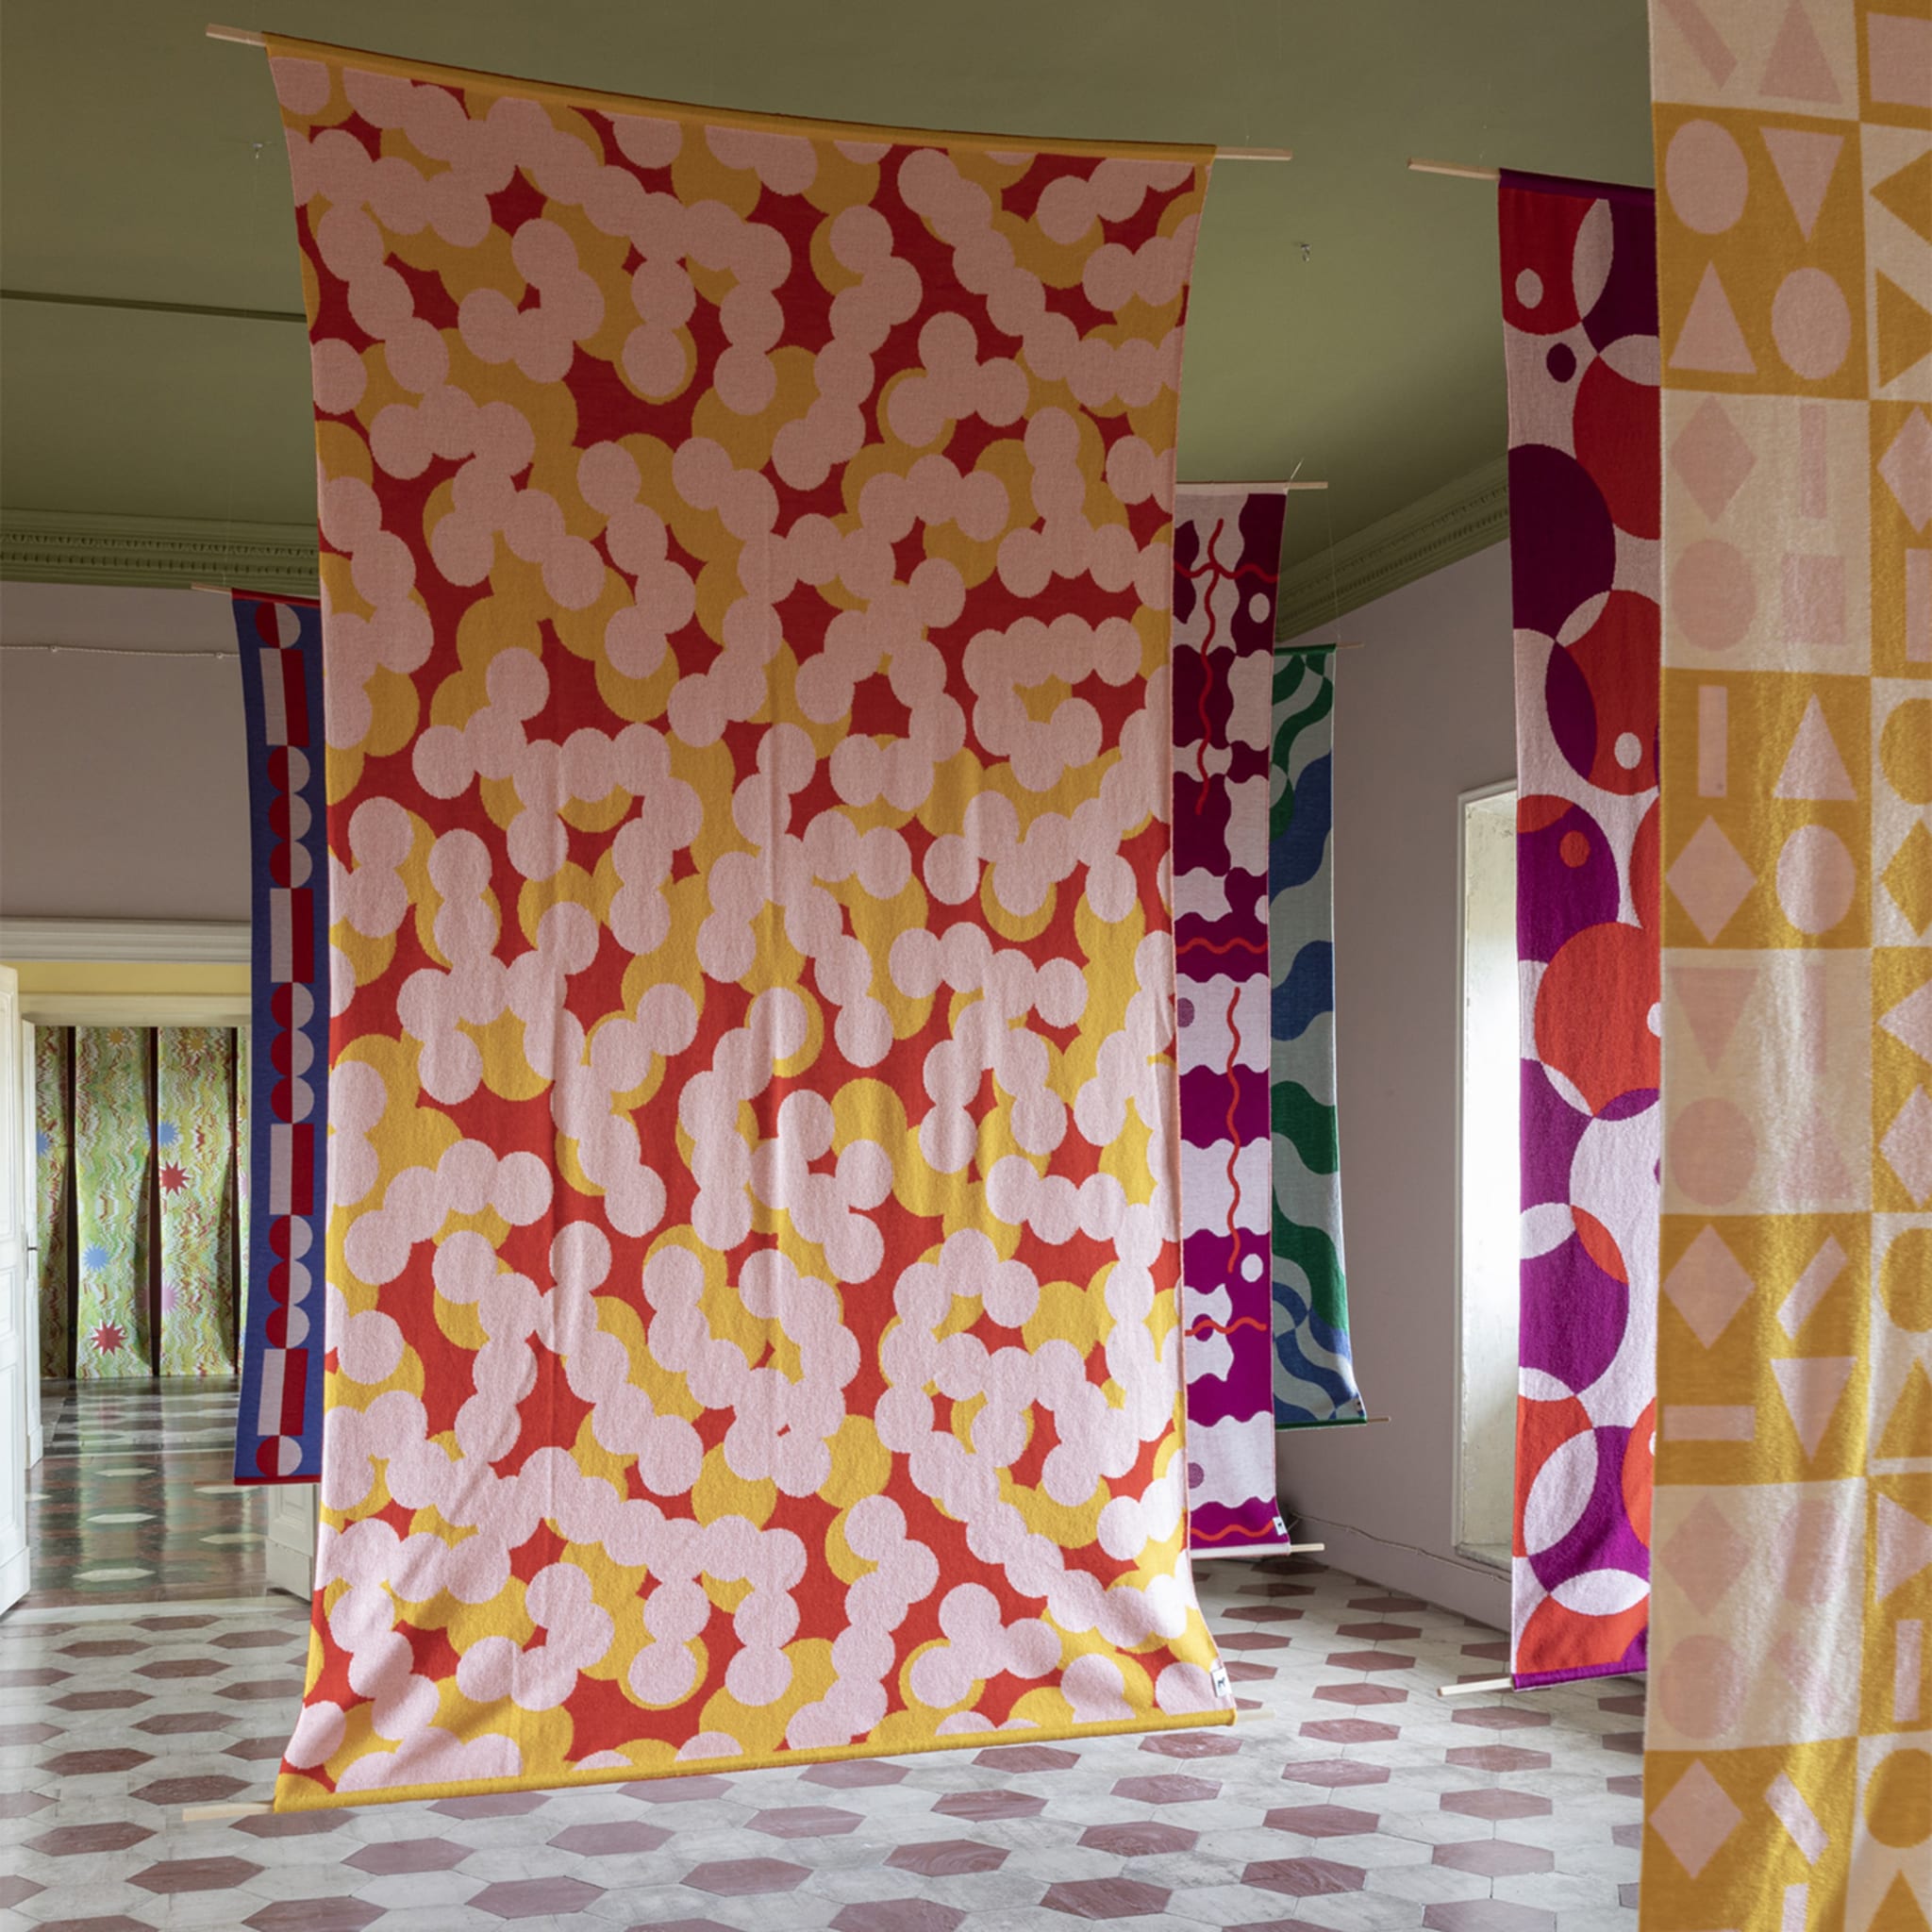 Trip 2 Polychrome Blanket/Tapestry by Serena Confalonieri - Alternative view 1